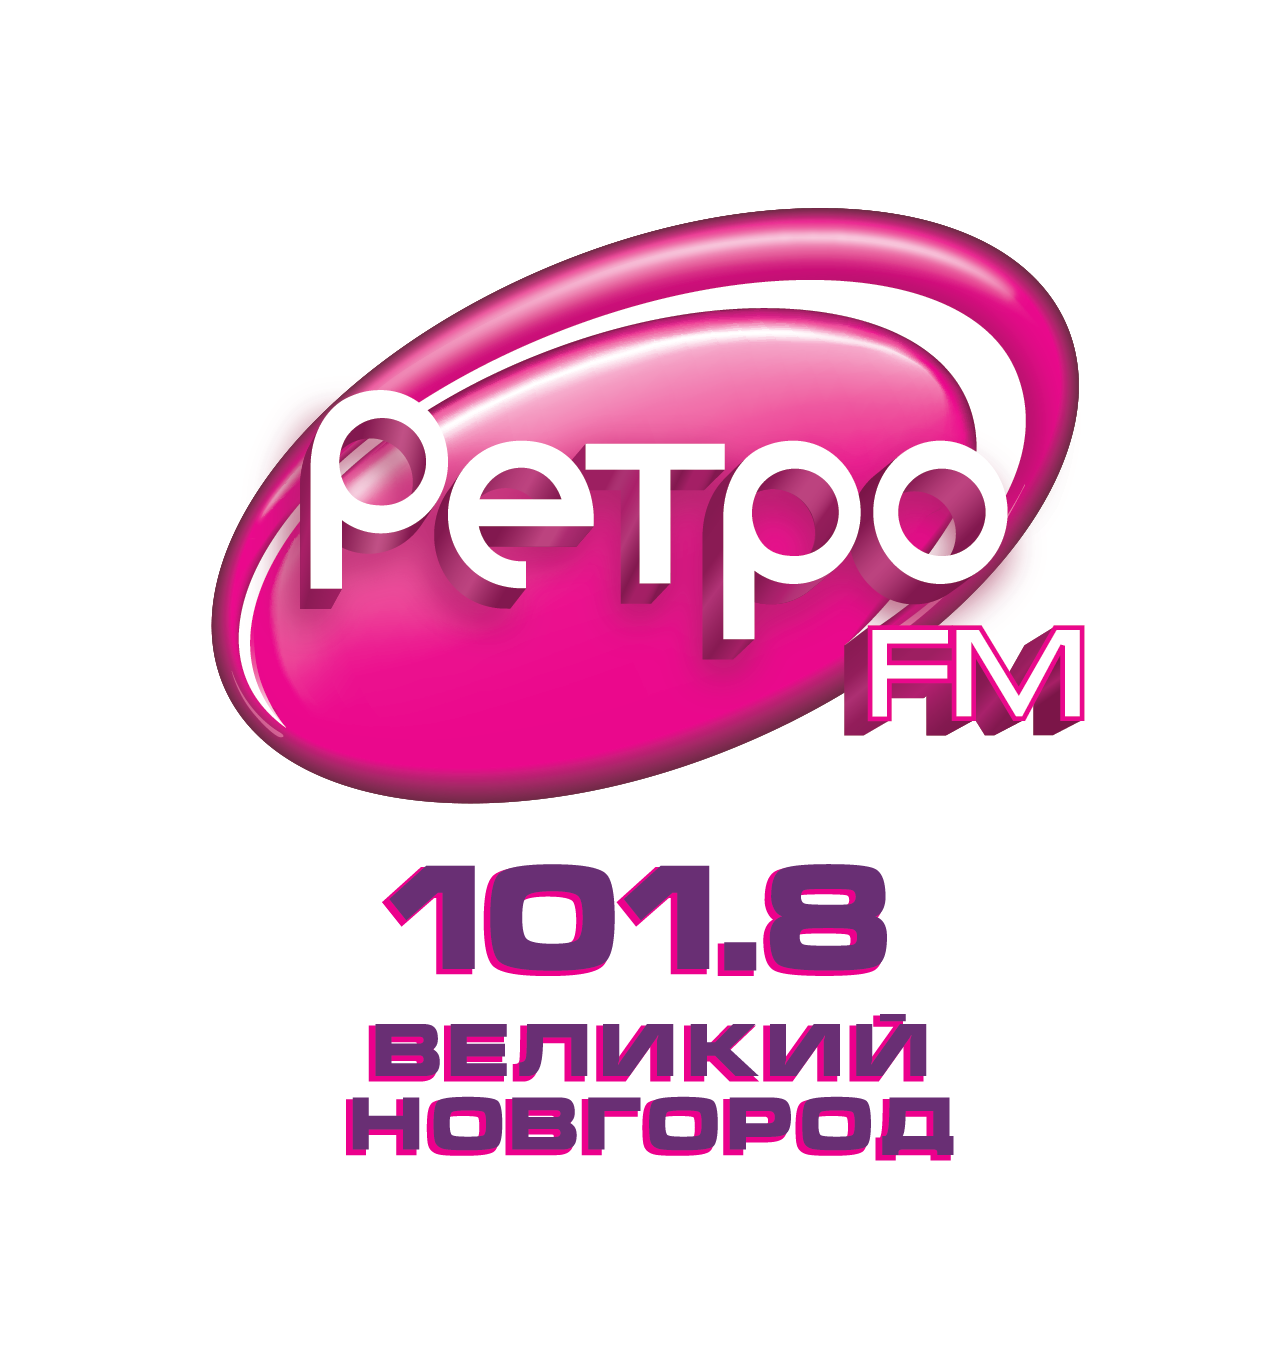 Логотип радиостанции ретро ФМ. Ретро fm лого. Лого радиостанции ретро. Ретро ФМ Смоленск. Радио ретро фм 70 90